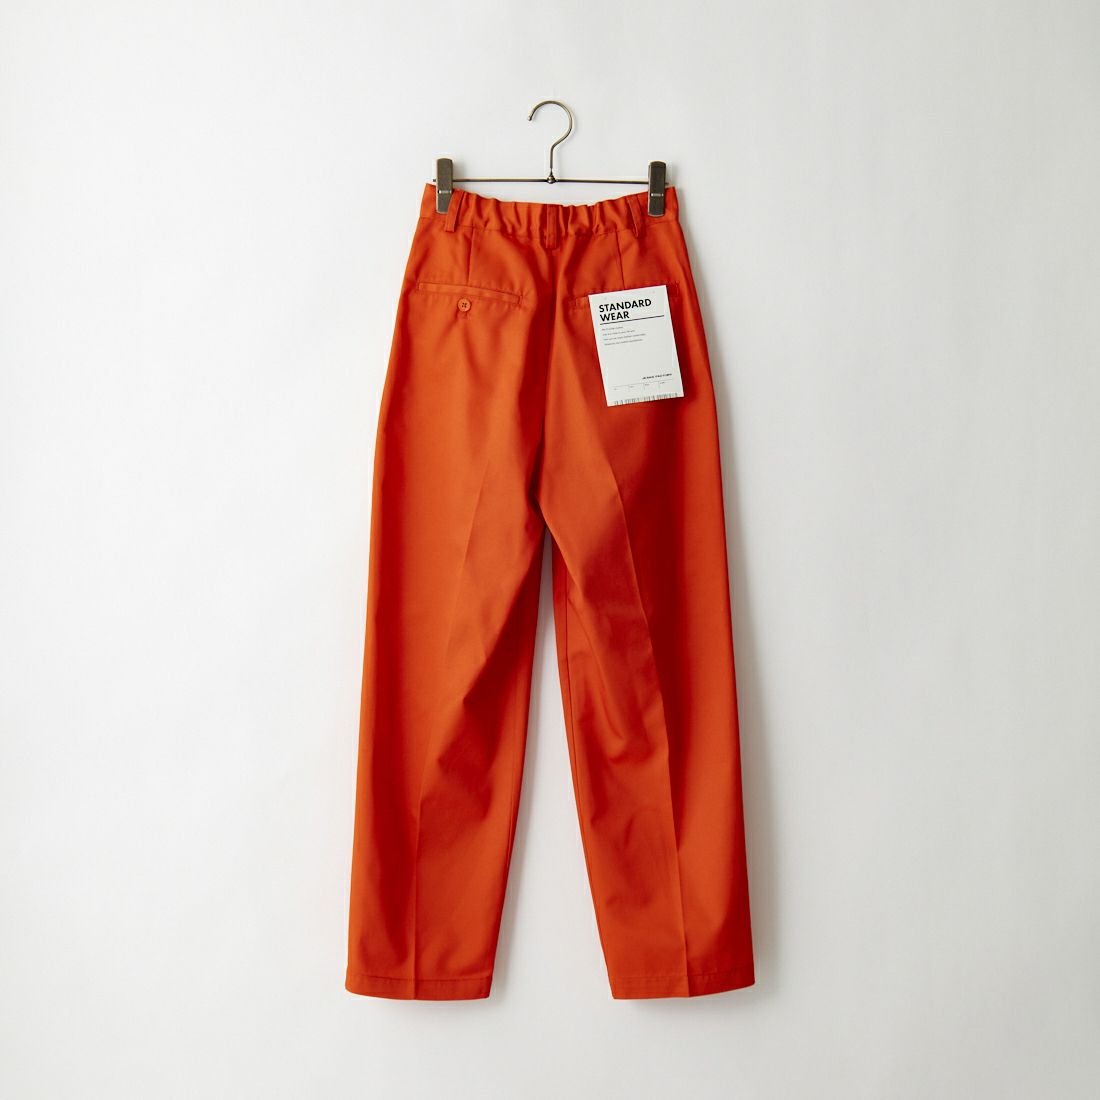 Jeans Factory Clothes [ジーンズファクトリークローズ] 1タック イージースラックスパンツ [22AWINW-03PT]